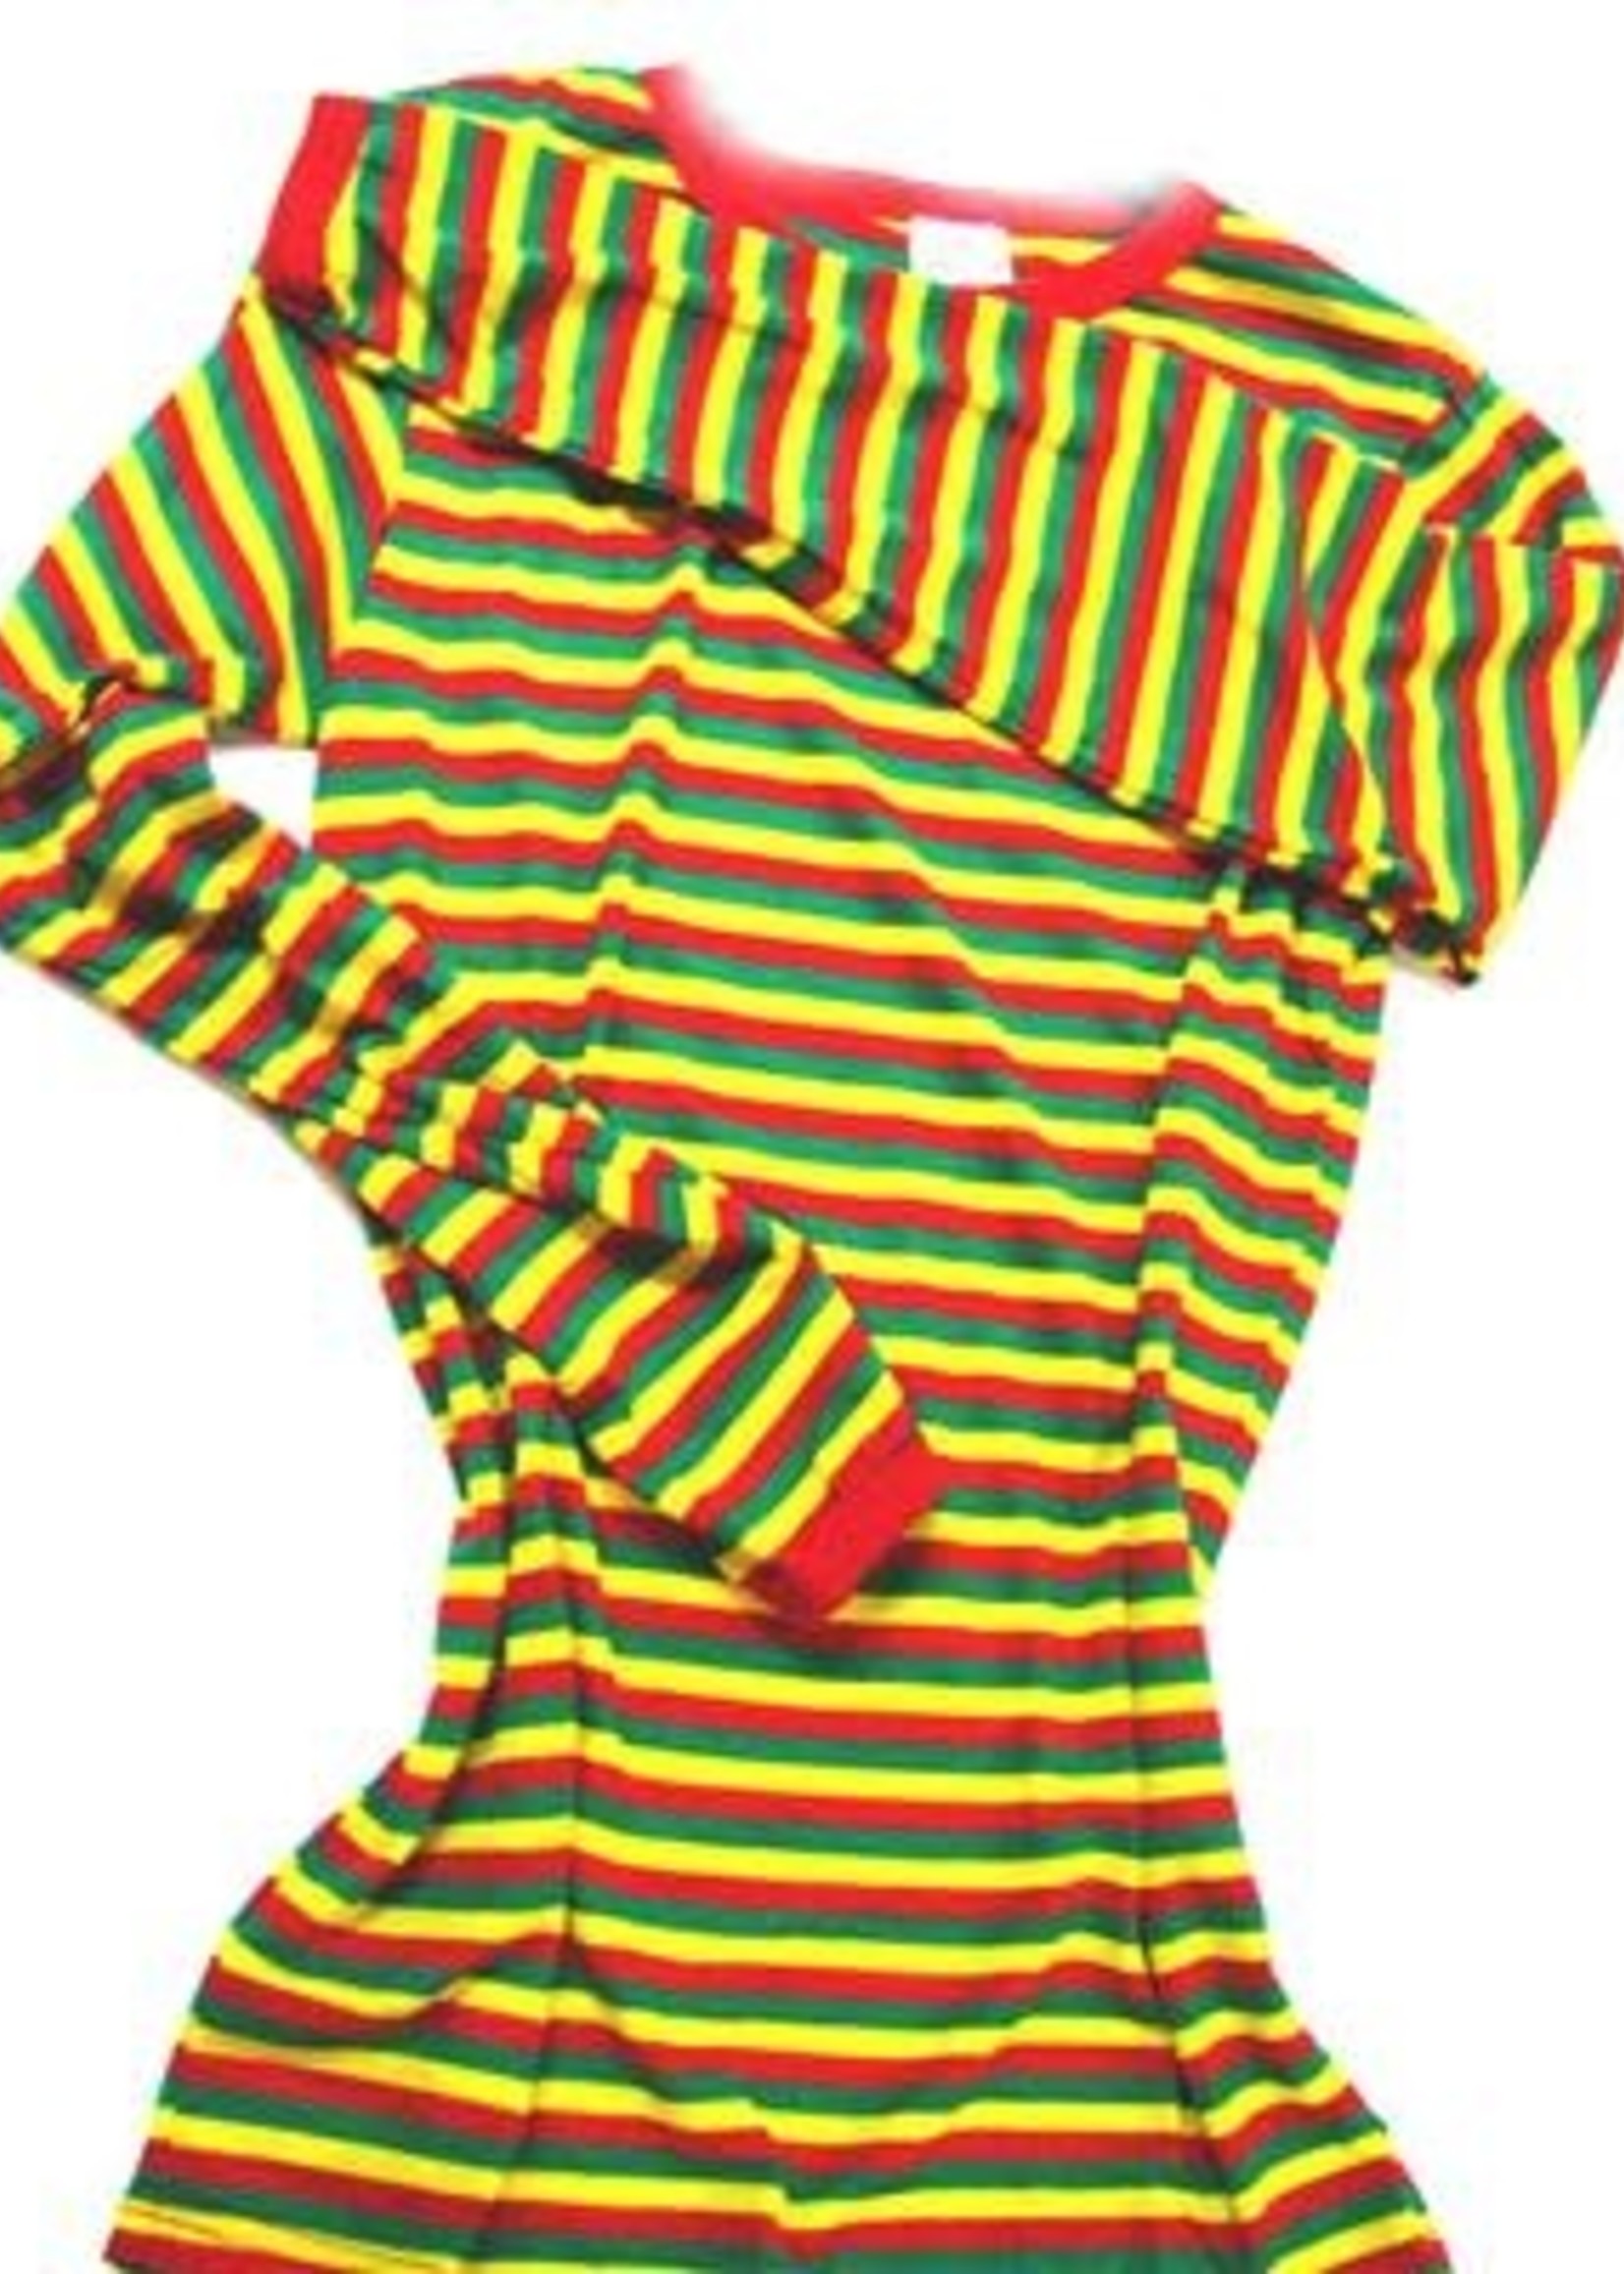 Bazaar Ple4 T-shirt groen/rood/geel